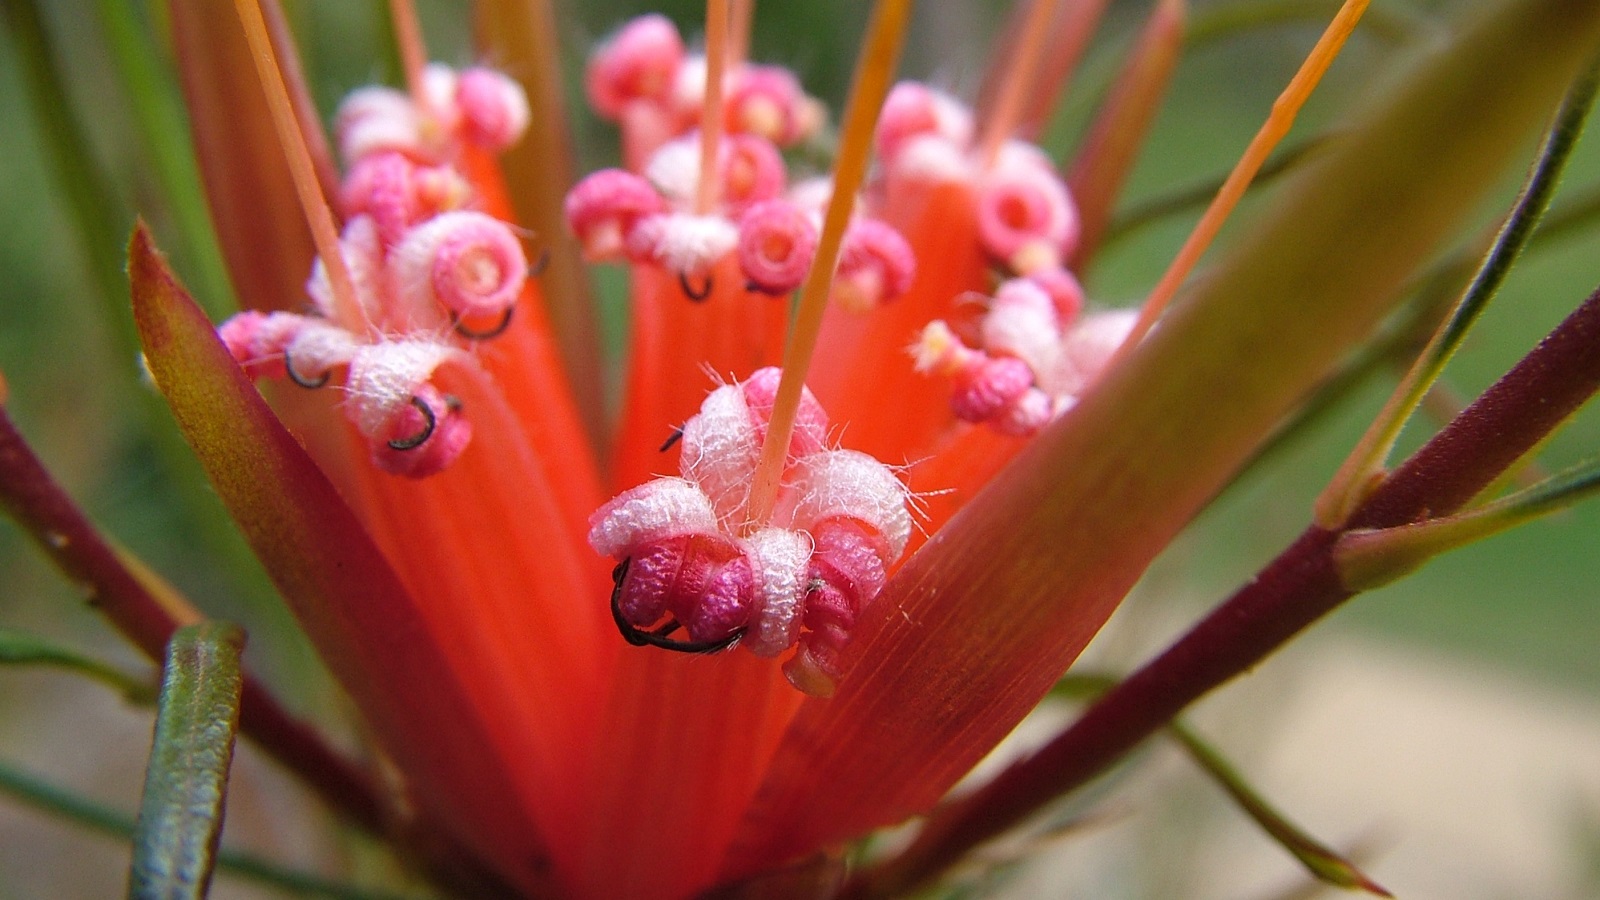 Flora: Red flower stamens